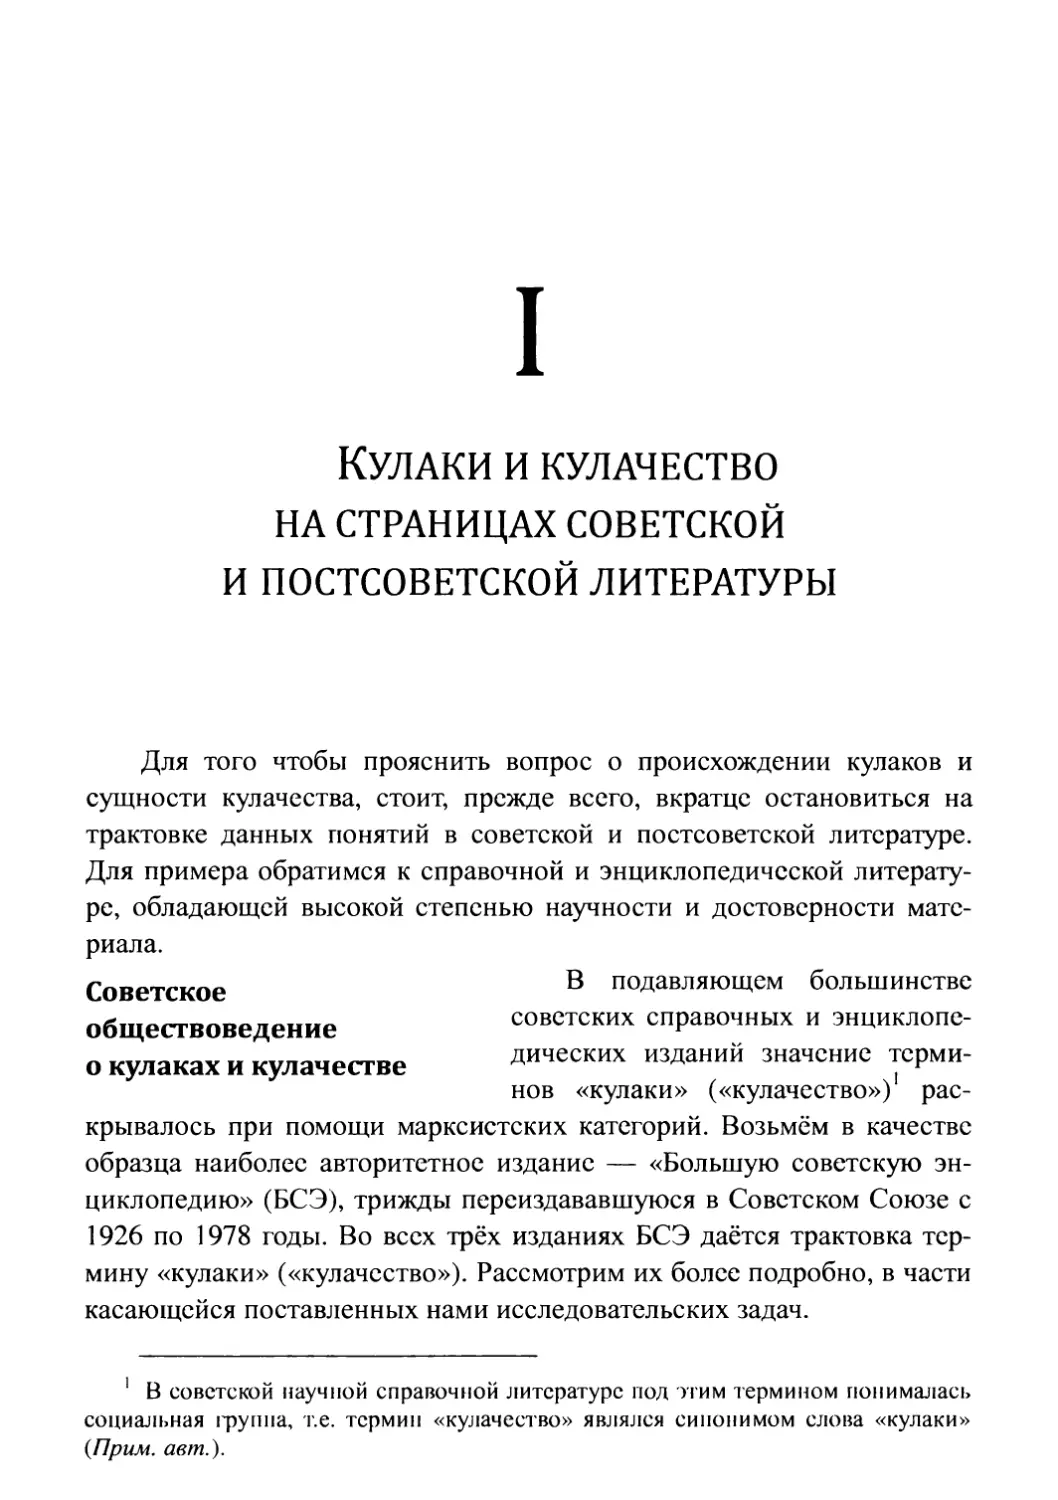 I. Кулаки и кулачество на страницах советской и постсоветской литературы